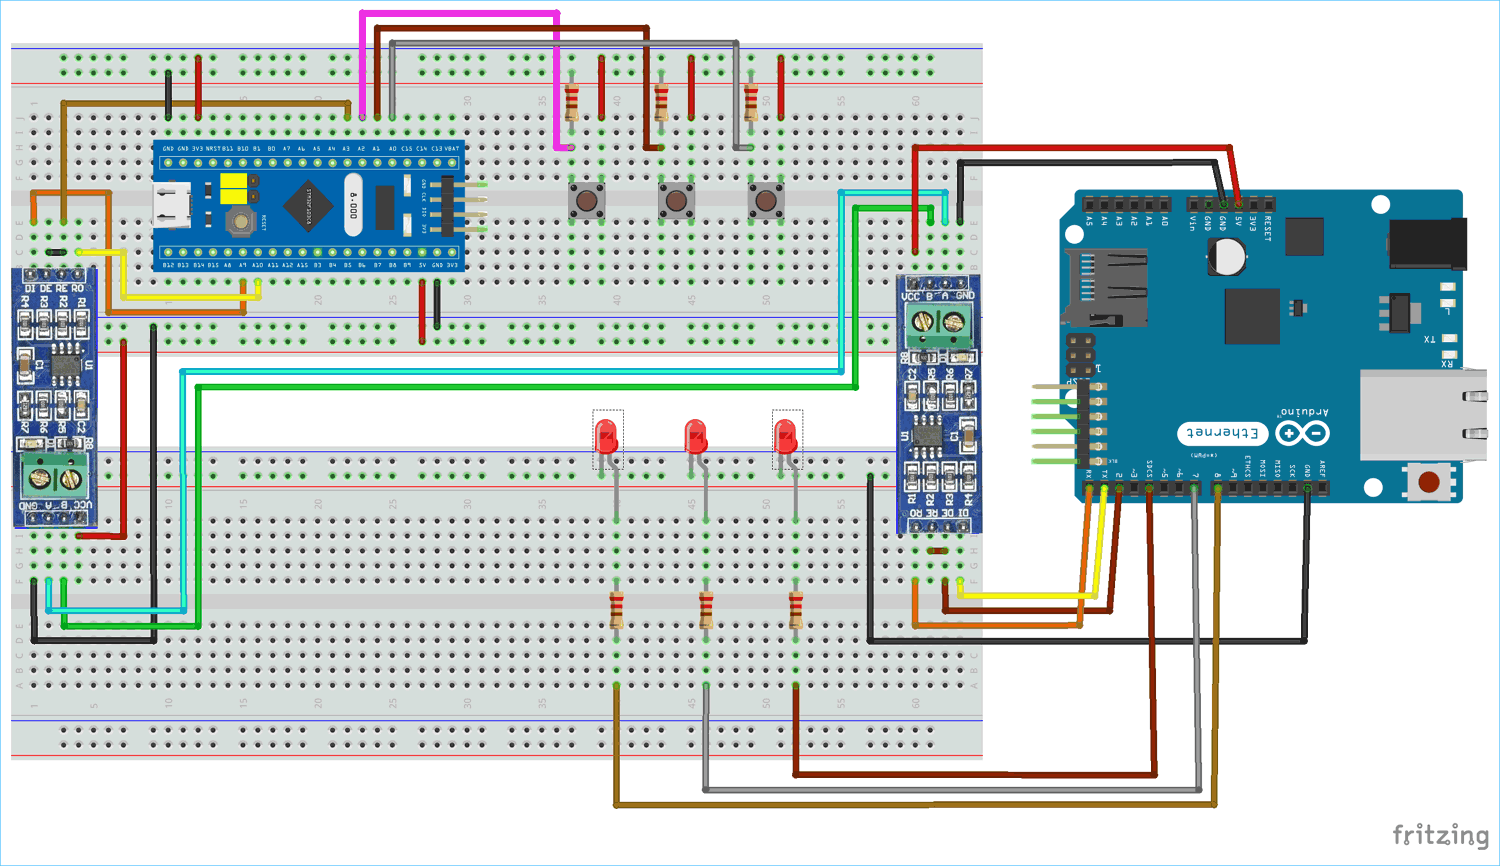 ارتباط سریال بین میکروکنترلر STM32F103C8 و بورد Arduino Uno با استفاده از پروتکل RS-485